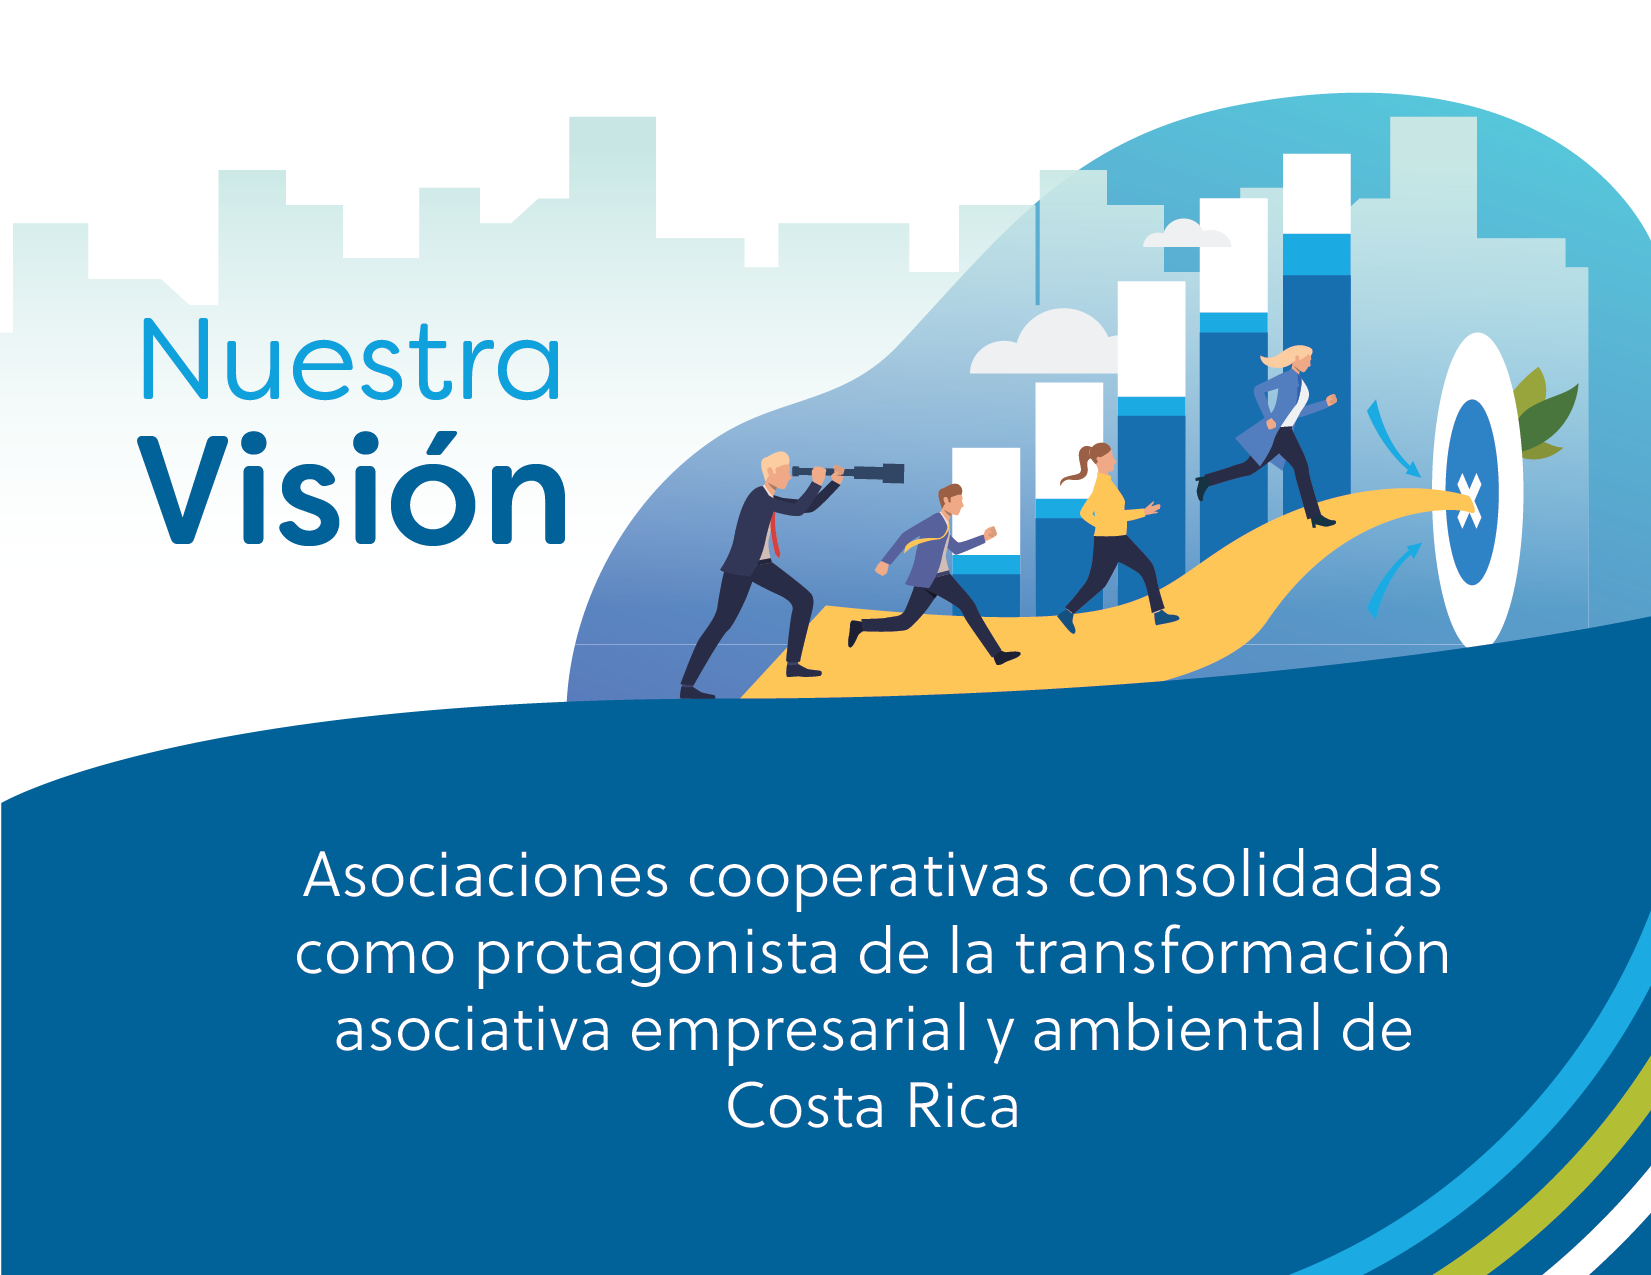 Asociaciones cooperativas consolidadas como protagonista de la transformación asociativaempresarial y ambiental de Costa Rica